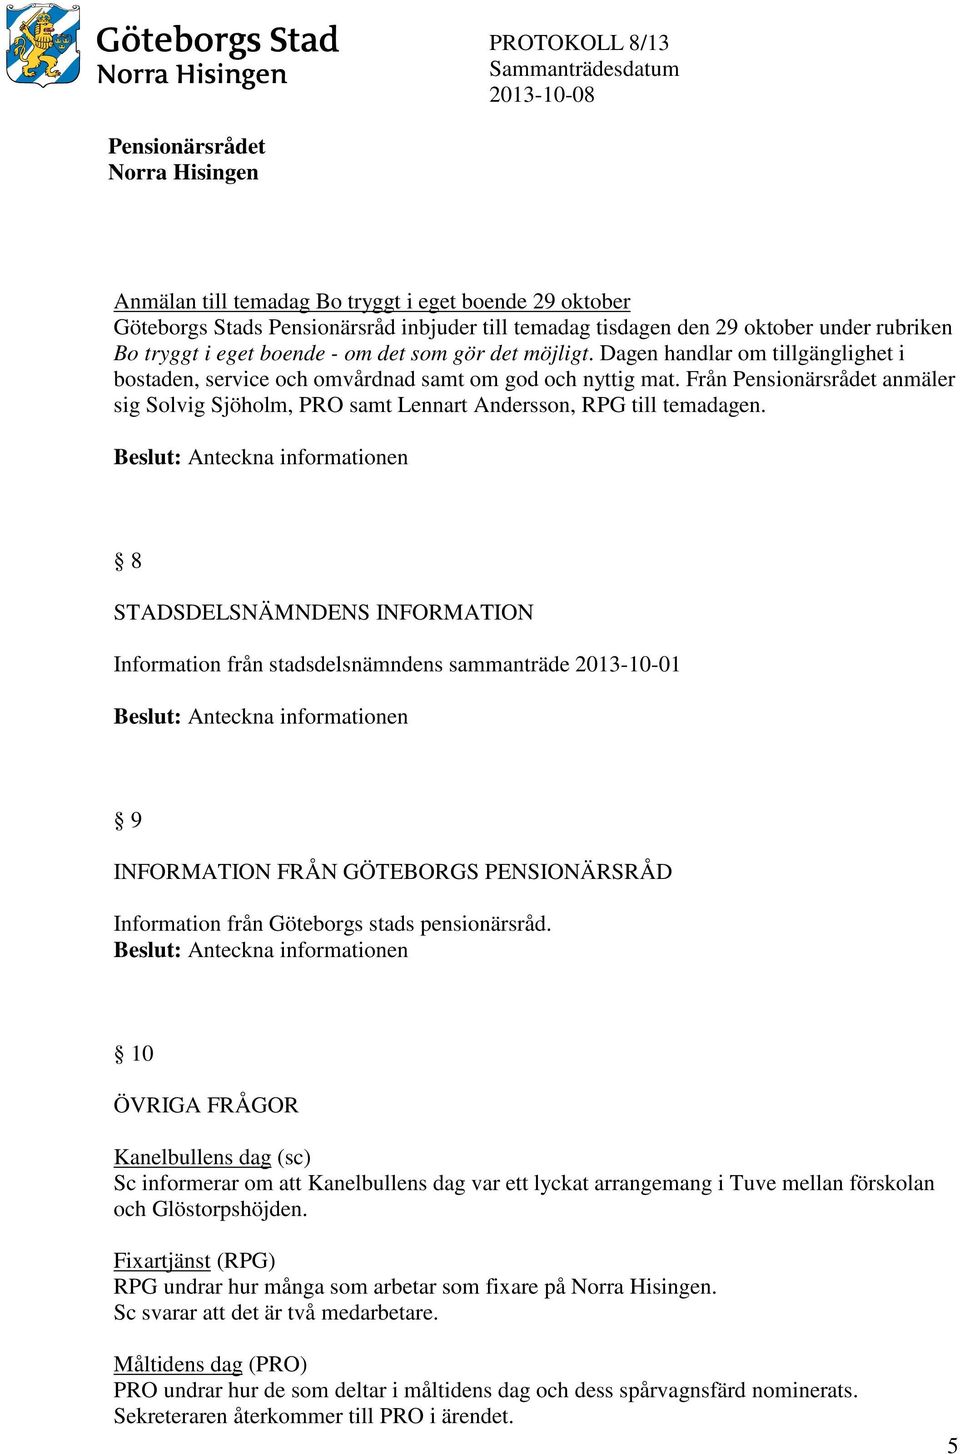 8 STADSDELSNÄMNDENS INFORMATION Information från stadsdelsnämndens sammanträde 2013-10-01 9 INFORMATION FRÅN GÖTEBORGS PENSIONÄRSRÅD Information från Göteborgs stads pensionärsråd.